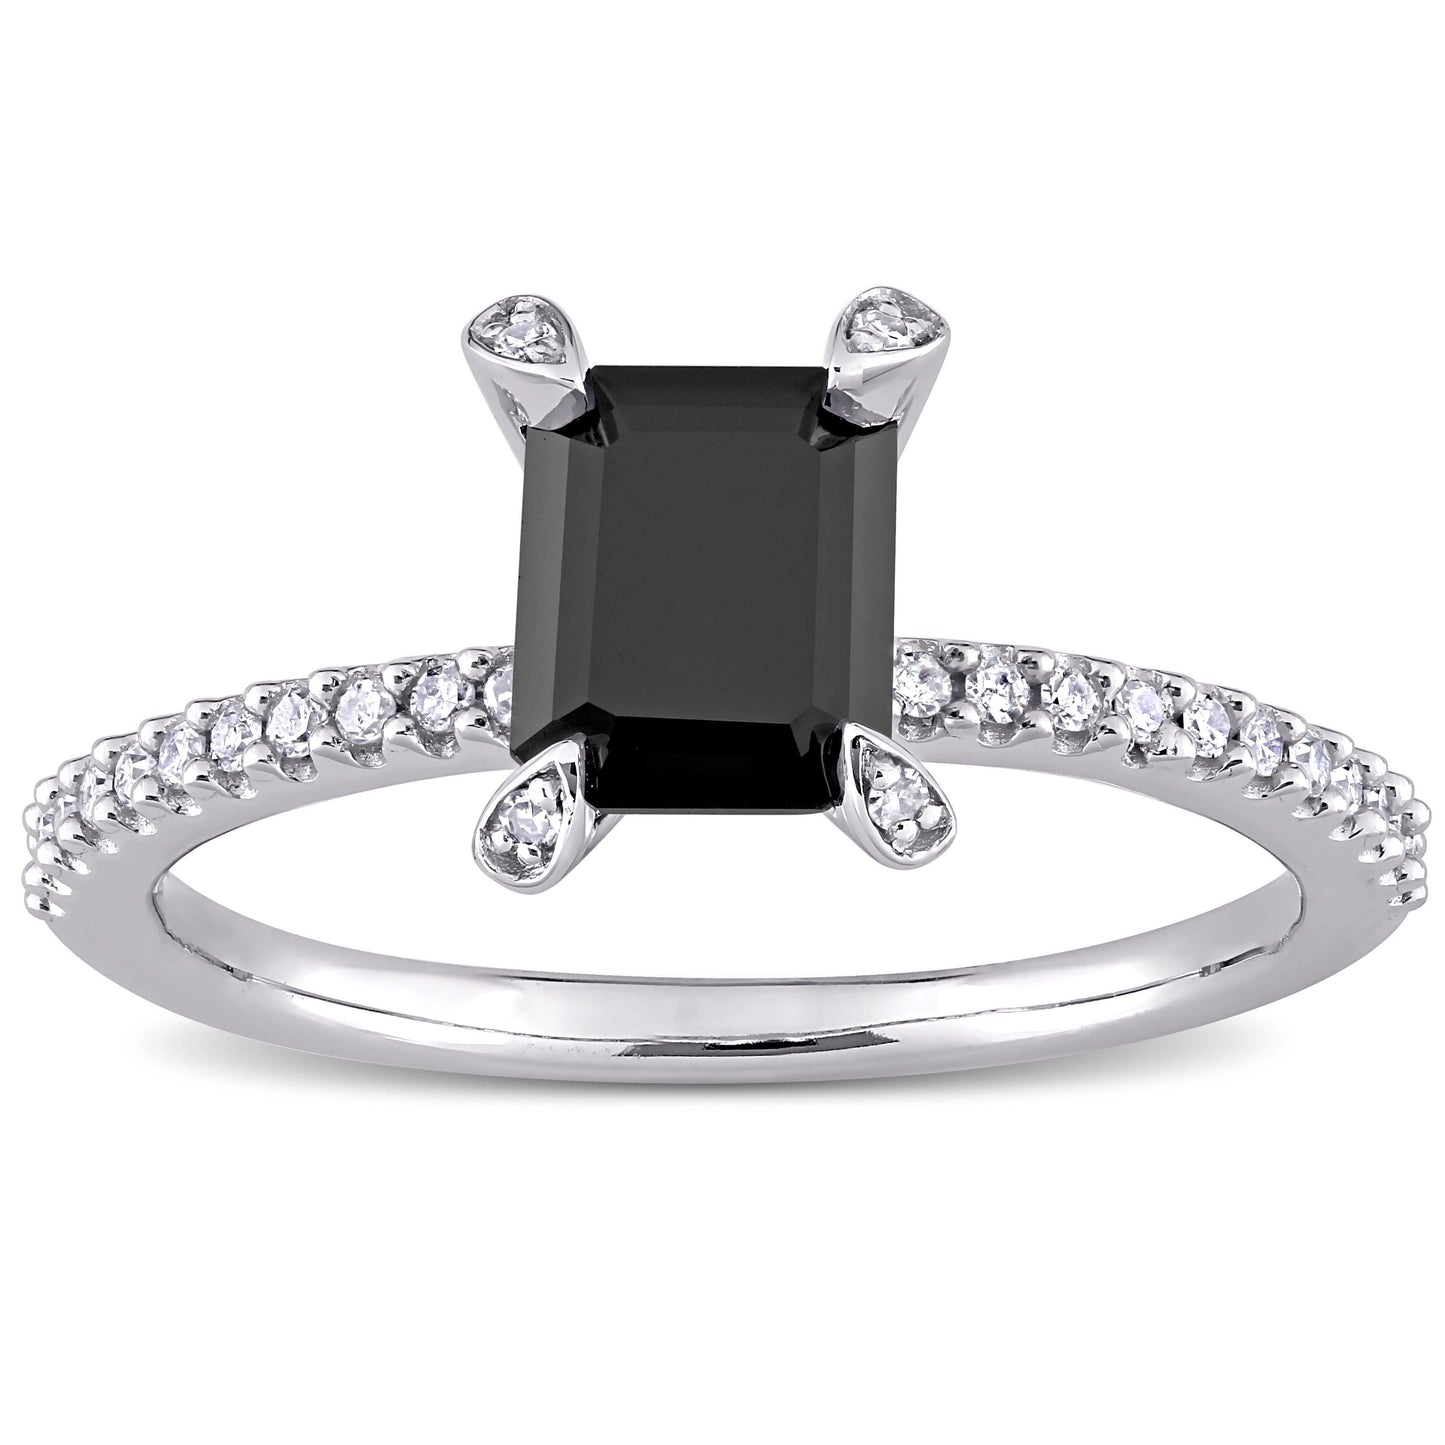 Julie Leah Black & White Diamond Ring in 10k White Gold